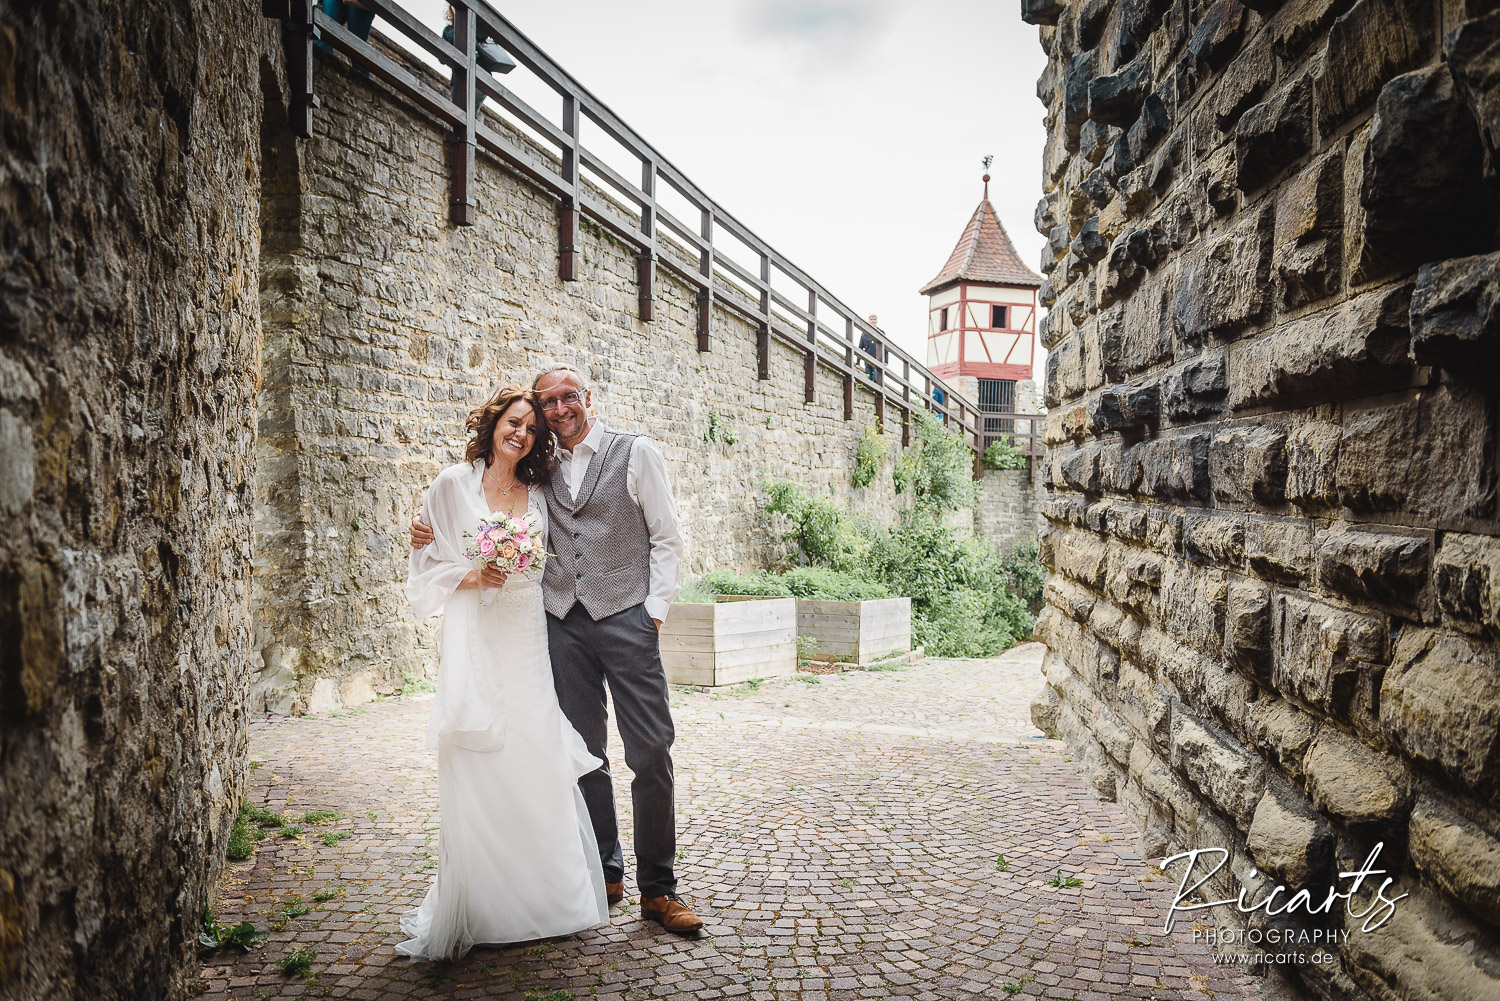 Brautpaar-vor-Stadtmauer-am-roten-Turm-Bad-Wimpfen